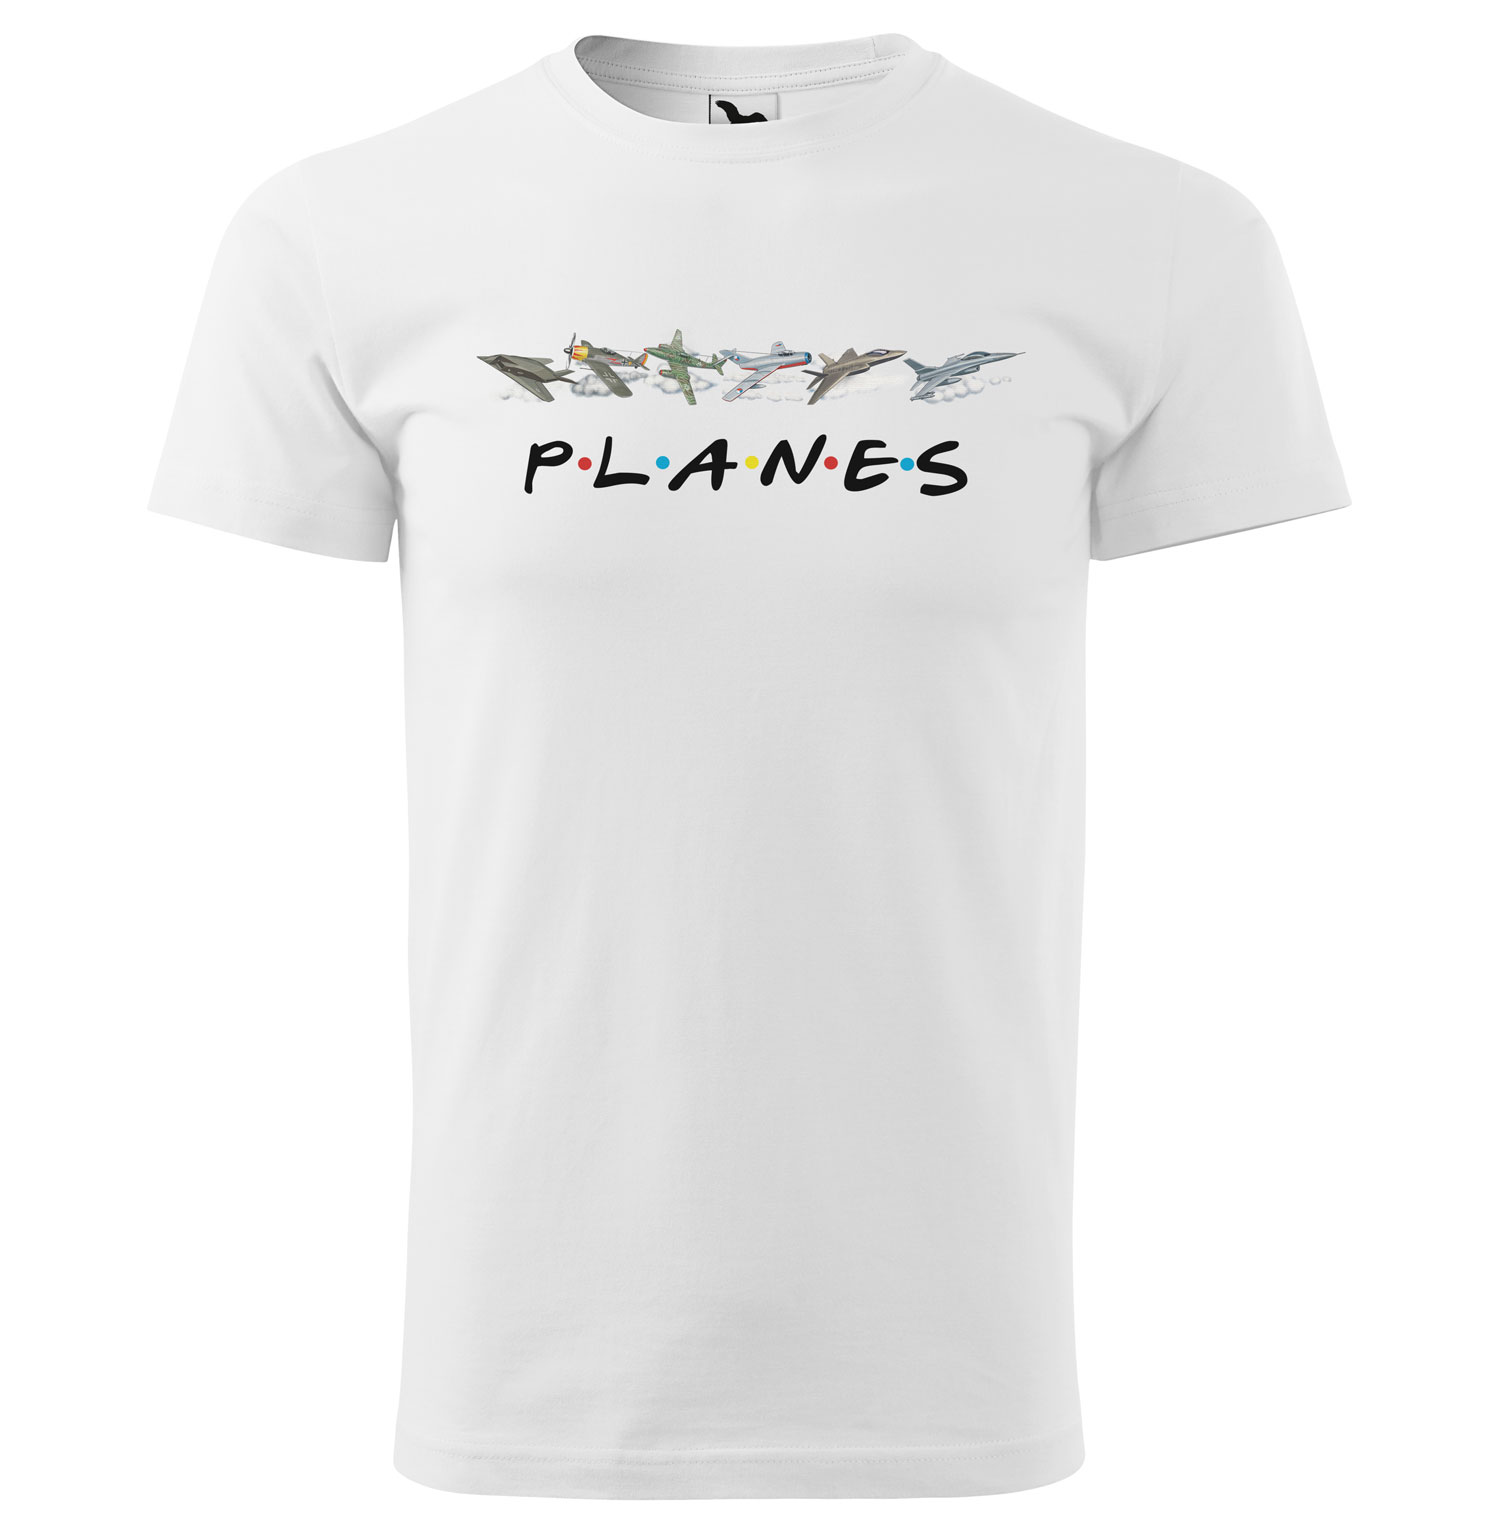 Tričko Planes (Velikost: XS, Typ: pro muže, Barva trička: Bílá)